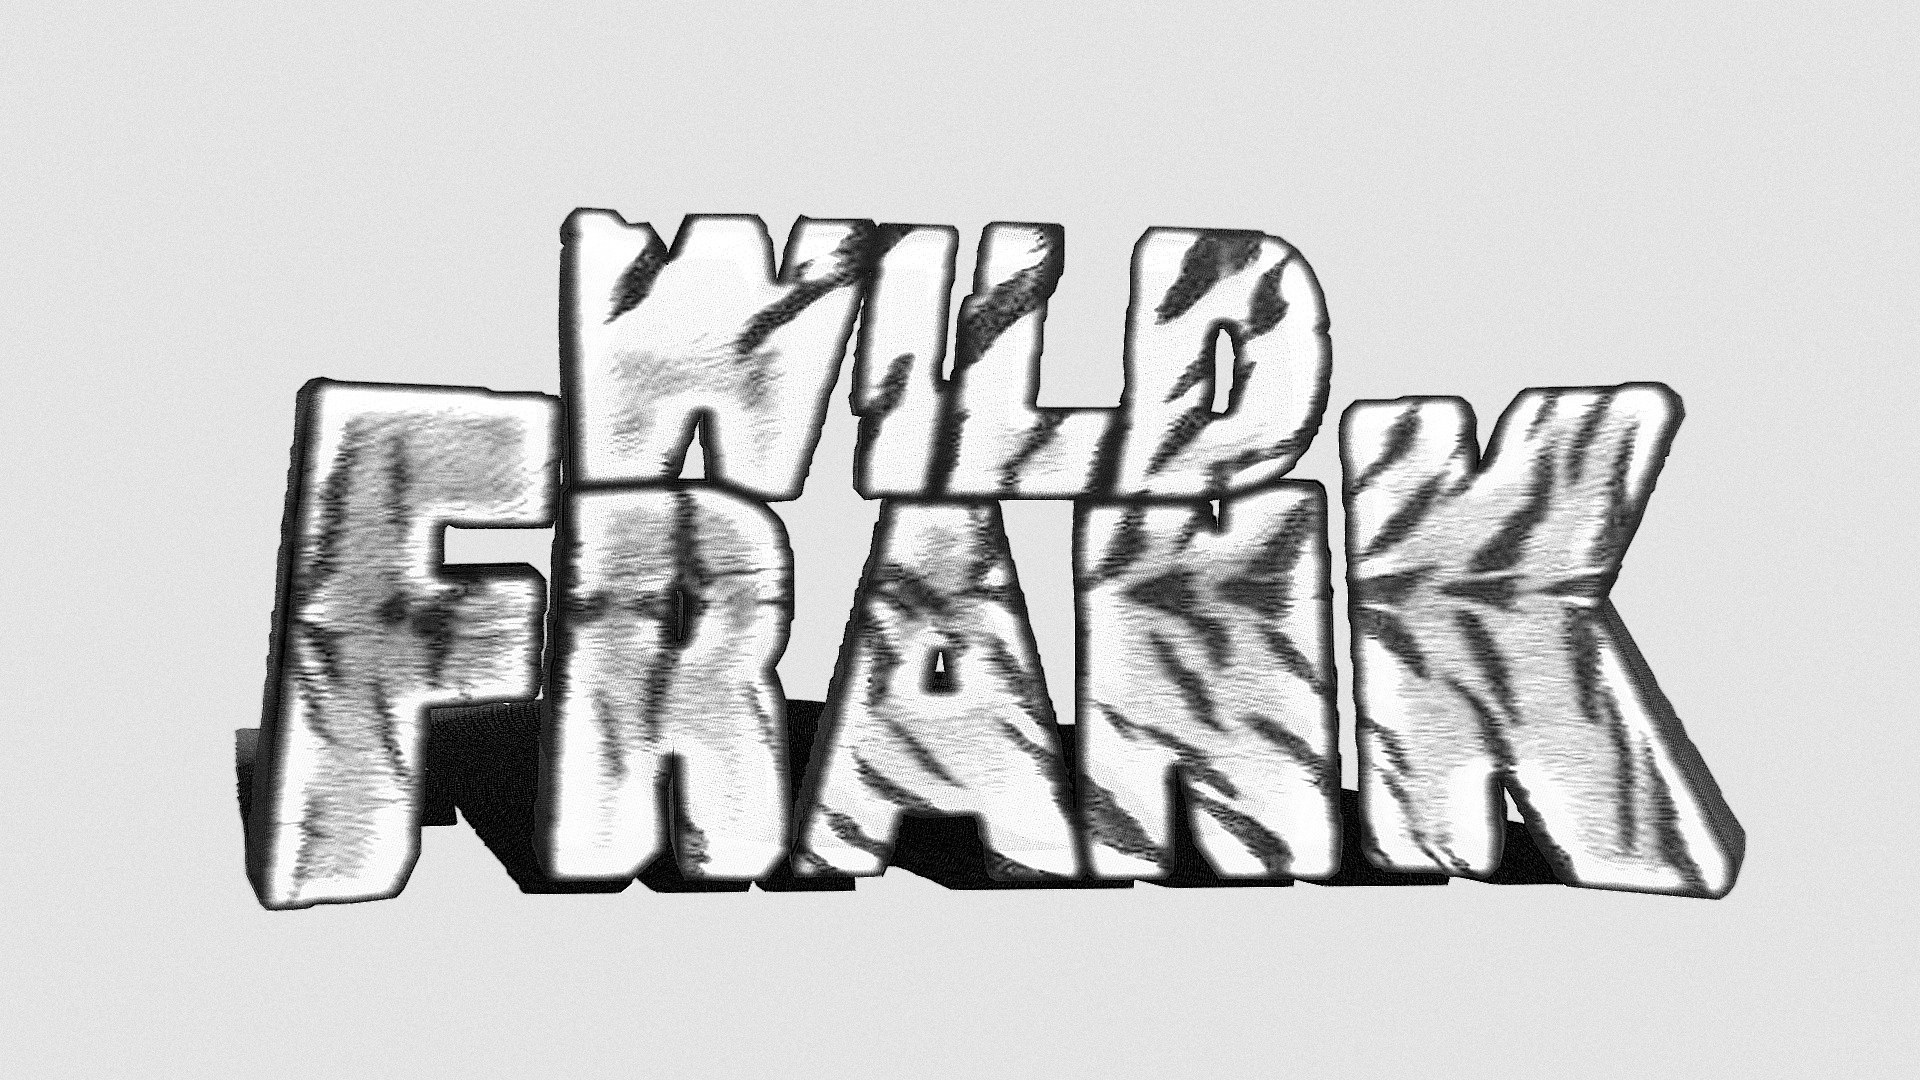 #16 "Wild Frank" - Wild "Inktober2019"